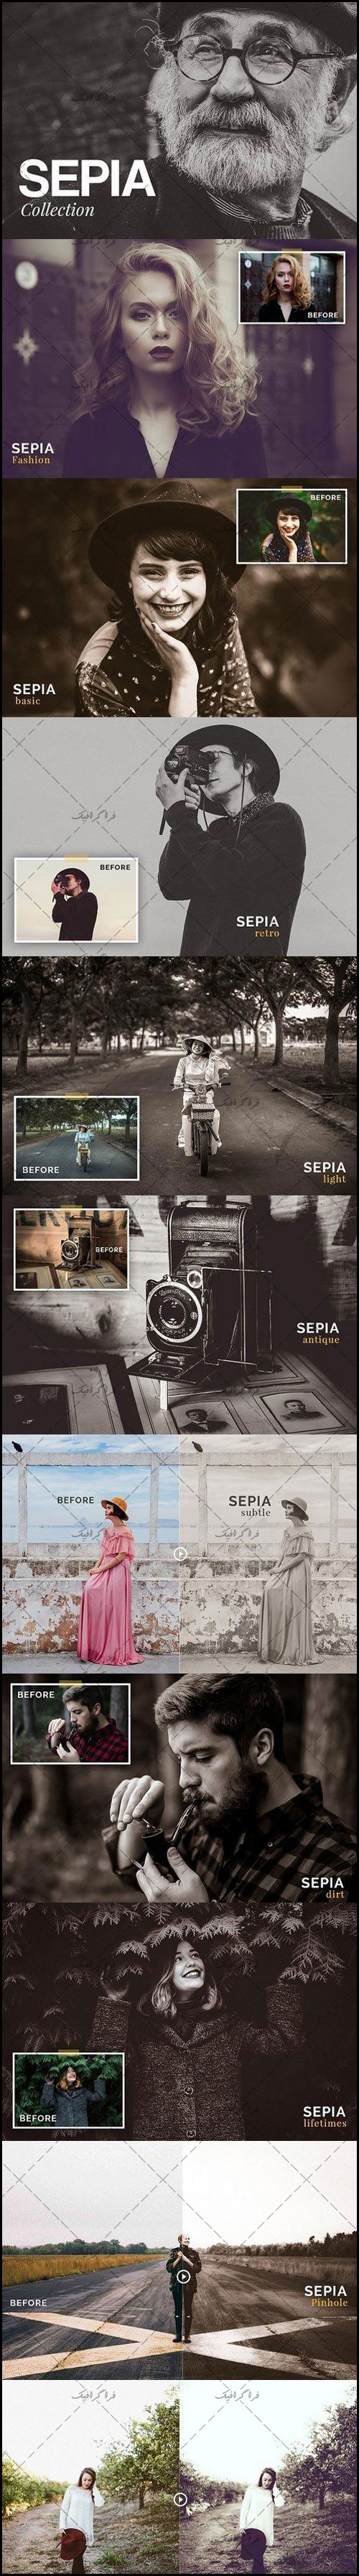 دانلود فیلتر لایت روم افکت های سپیا - Sepia Collection